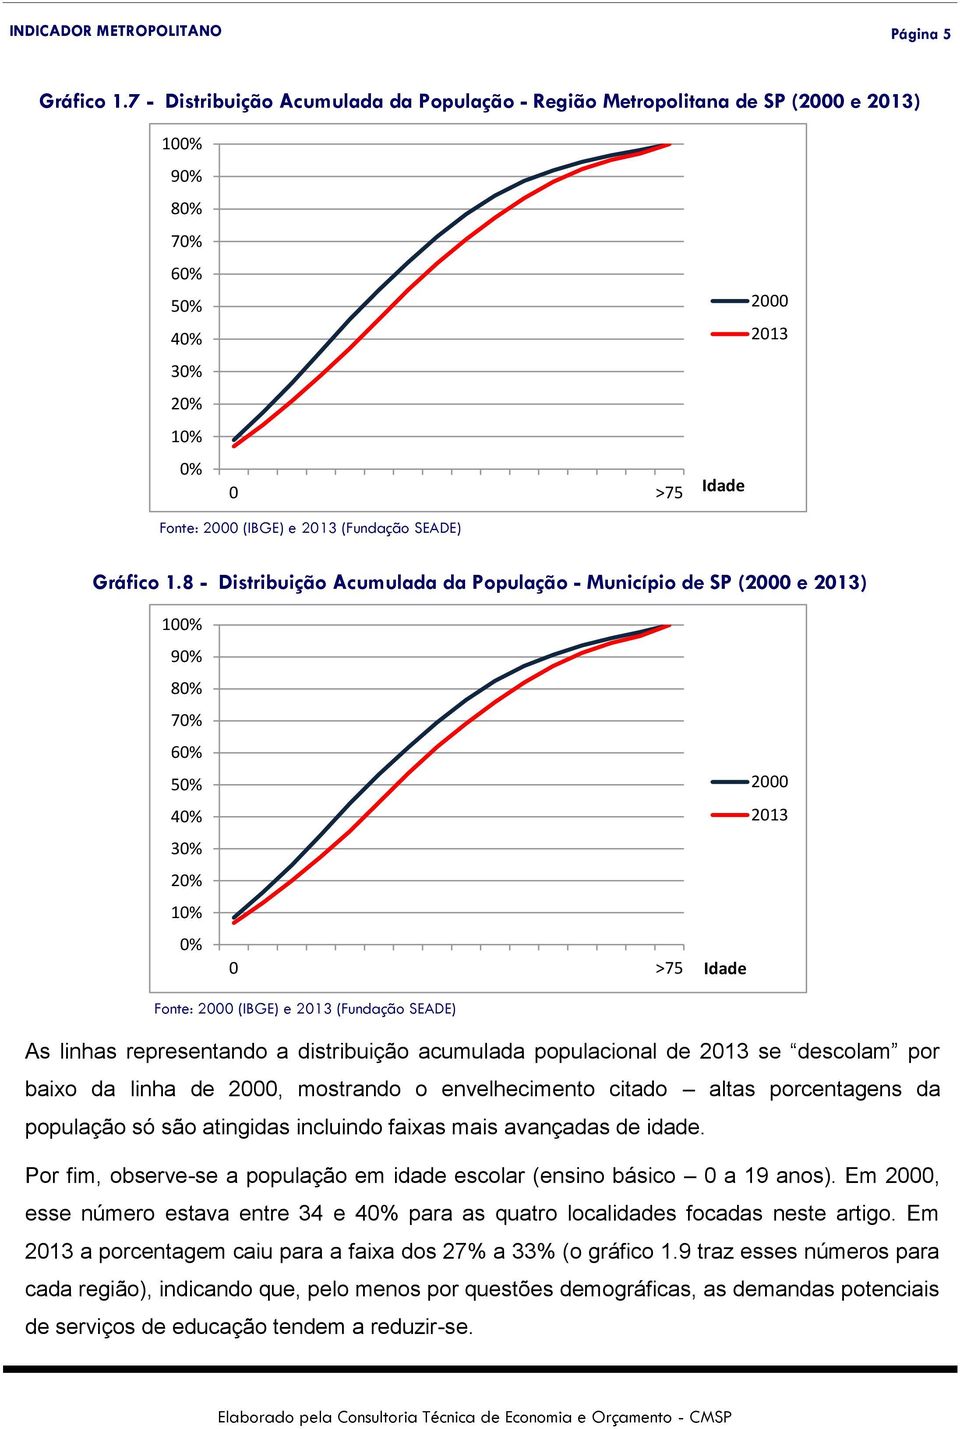 1.8 - Distribuição Acumulada da População - Município de SP (2000 e 2013) 100% 90% 80% 70% 60% 50% 40% 30% 20% 10% 0% 0 >75 Idade 2000 2013 Fonte: 2000 (IBGE) e 2013 (Fundação SEADE) As linhas